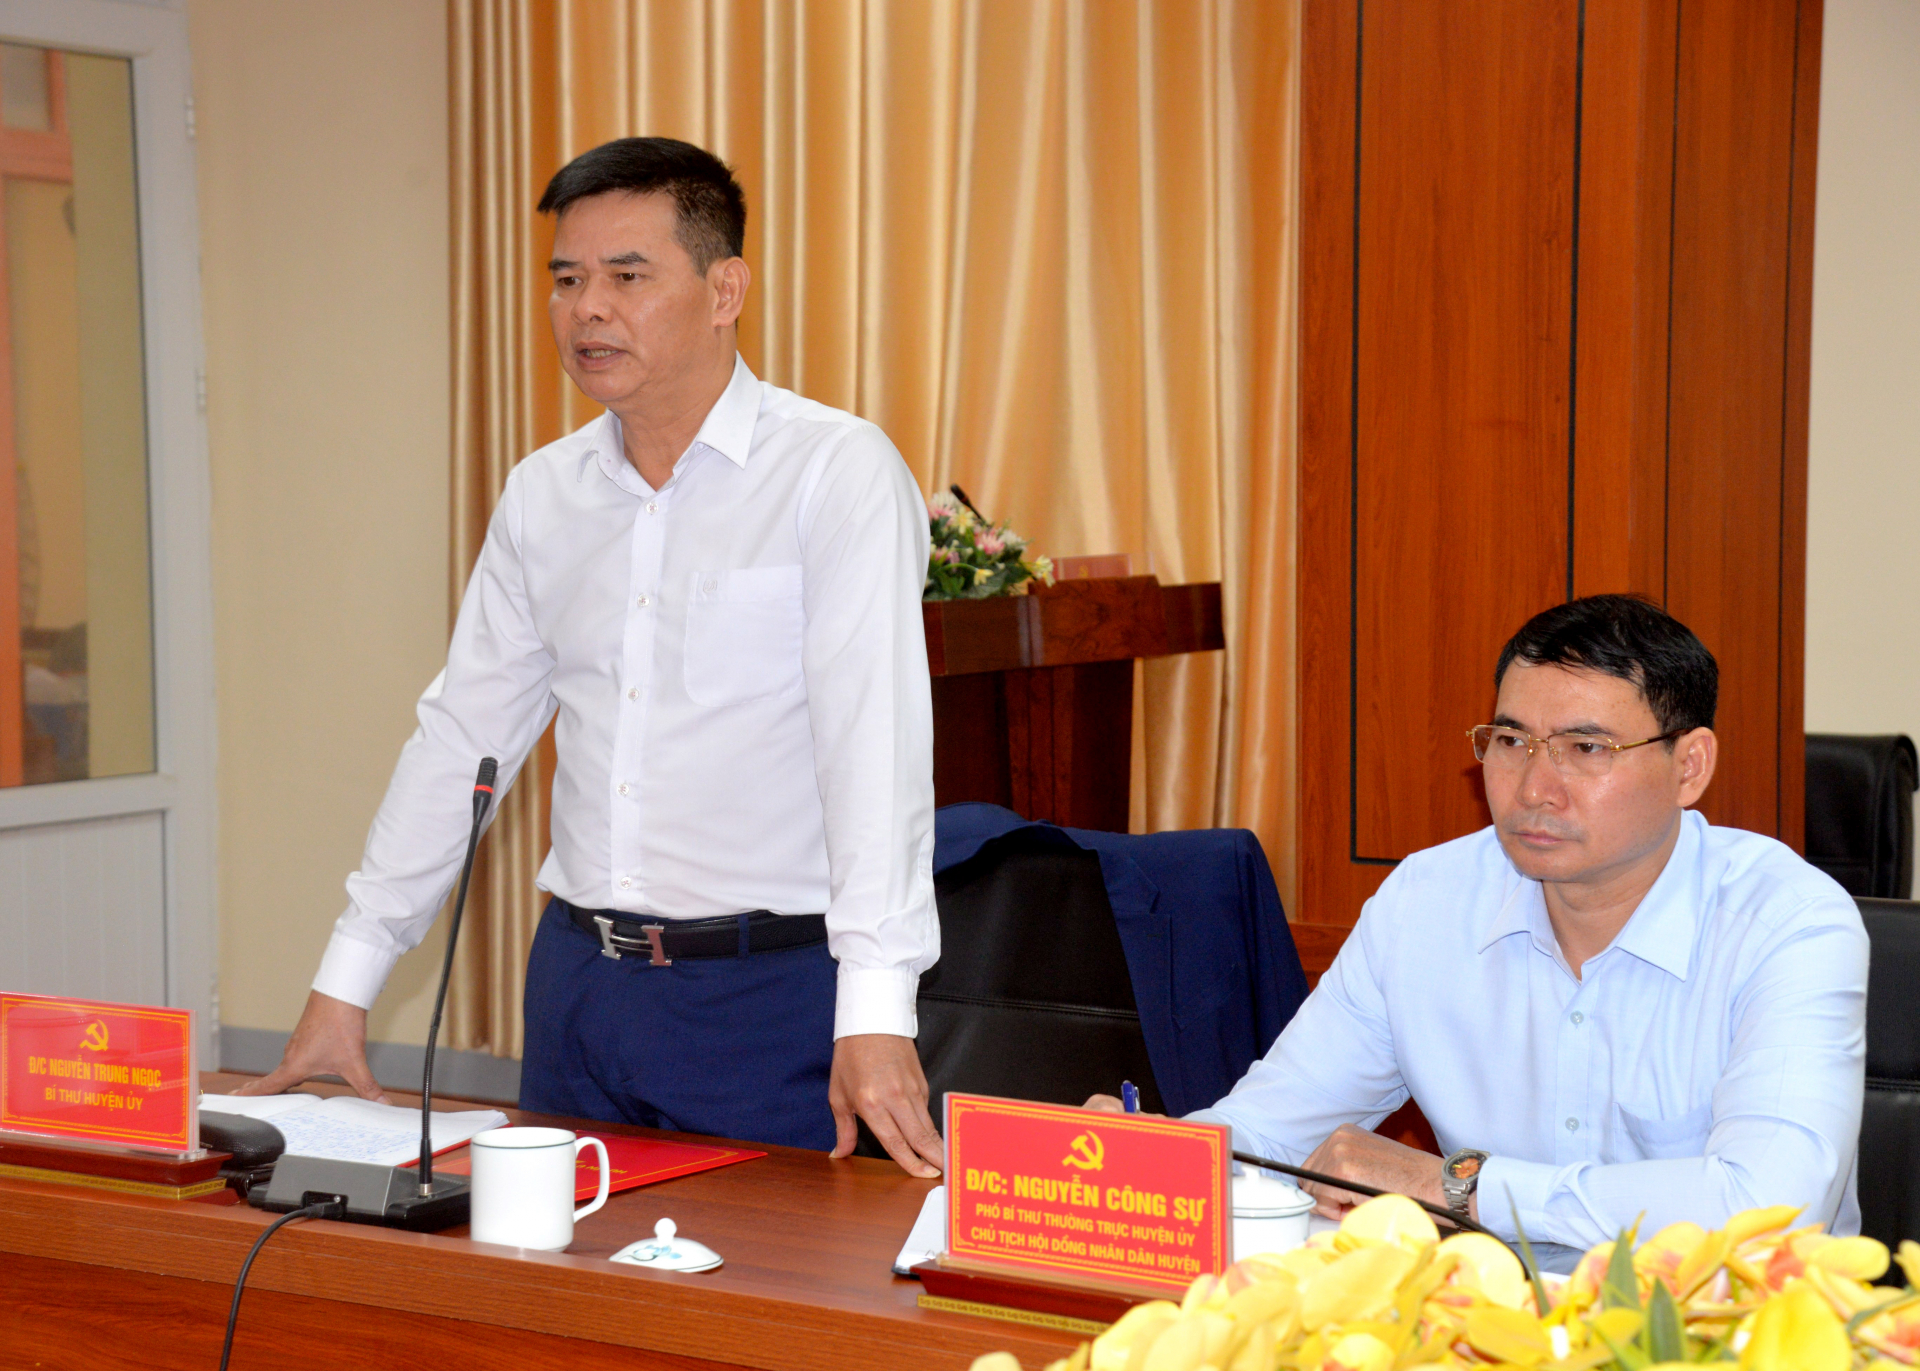 Đồng chí Nguyễn Trung Ngọc, Bí thư Huyện ủy Quang Bình phát biểu tại buổi làm việc